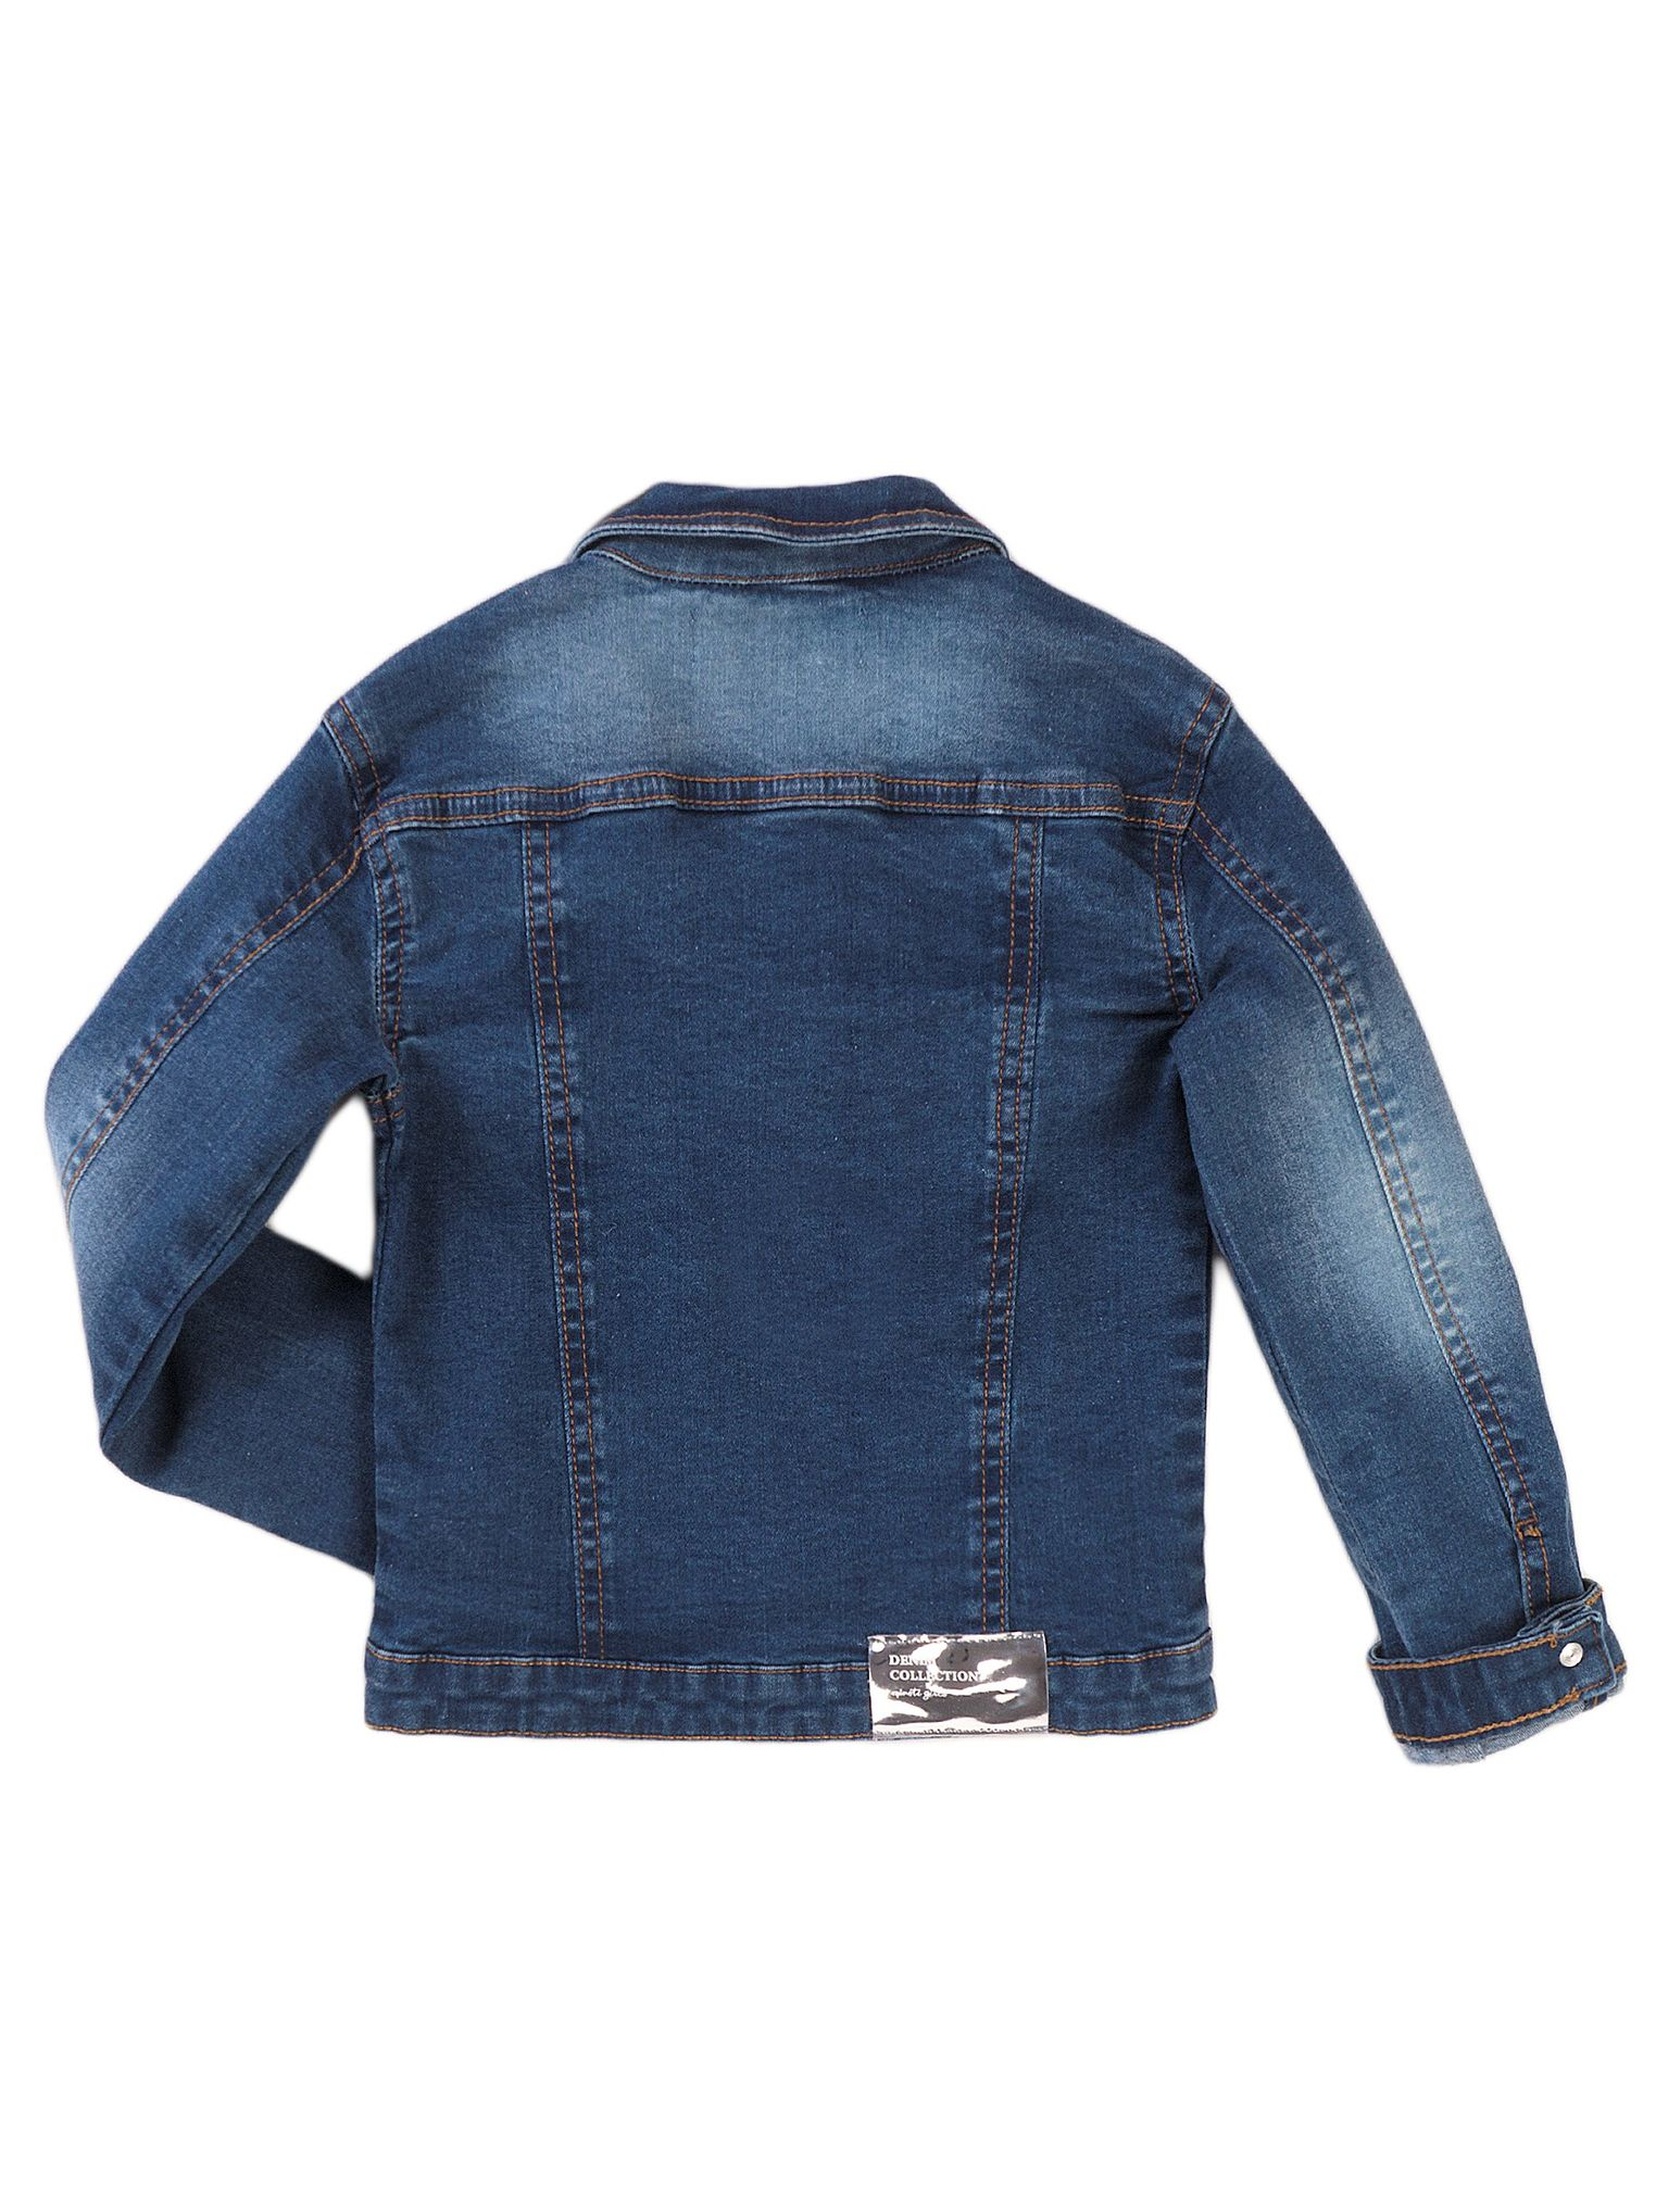 Granatowa kurtka jeansowa z cekinowymi naszywkami